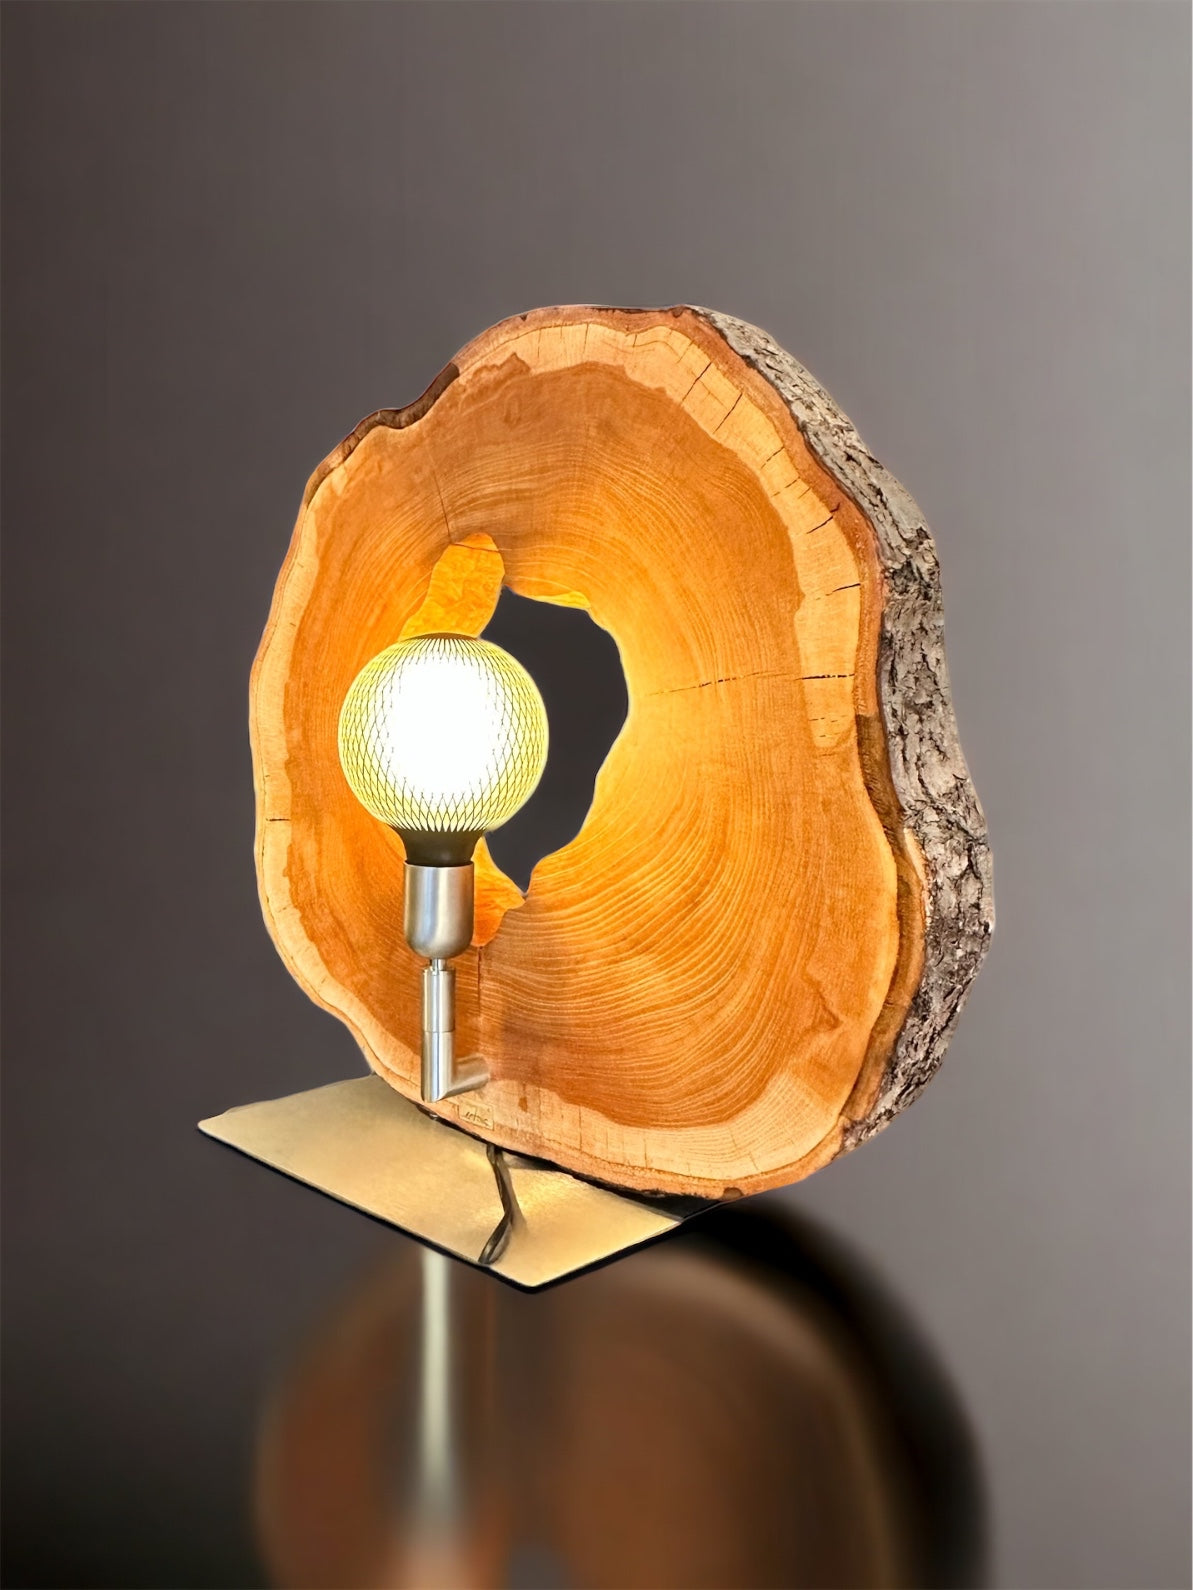 Aussergewöhnliche Unikat-Tischleuchte mit LED Glühbirne Kirschbaum aus Artnic – Manufaktur